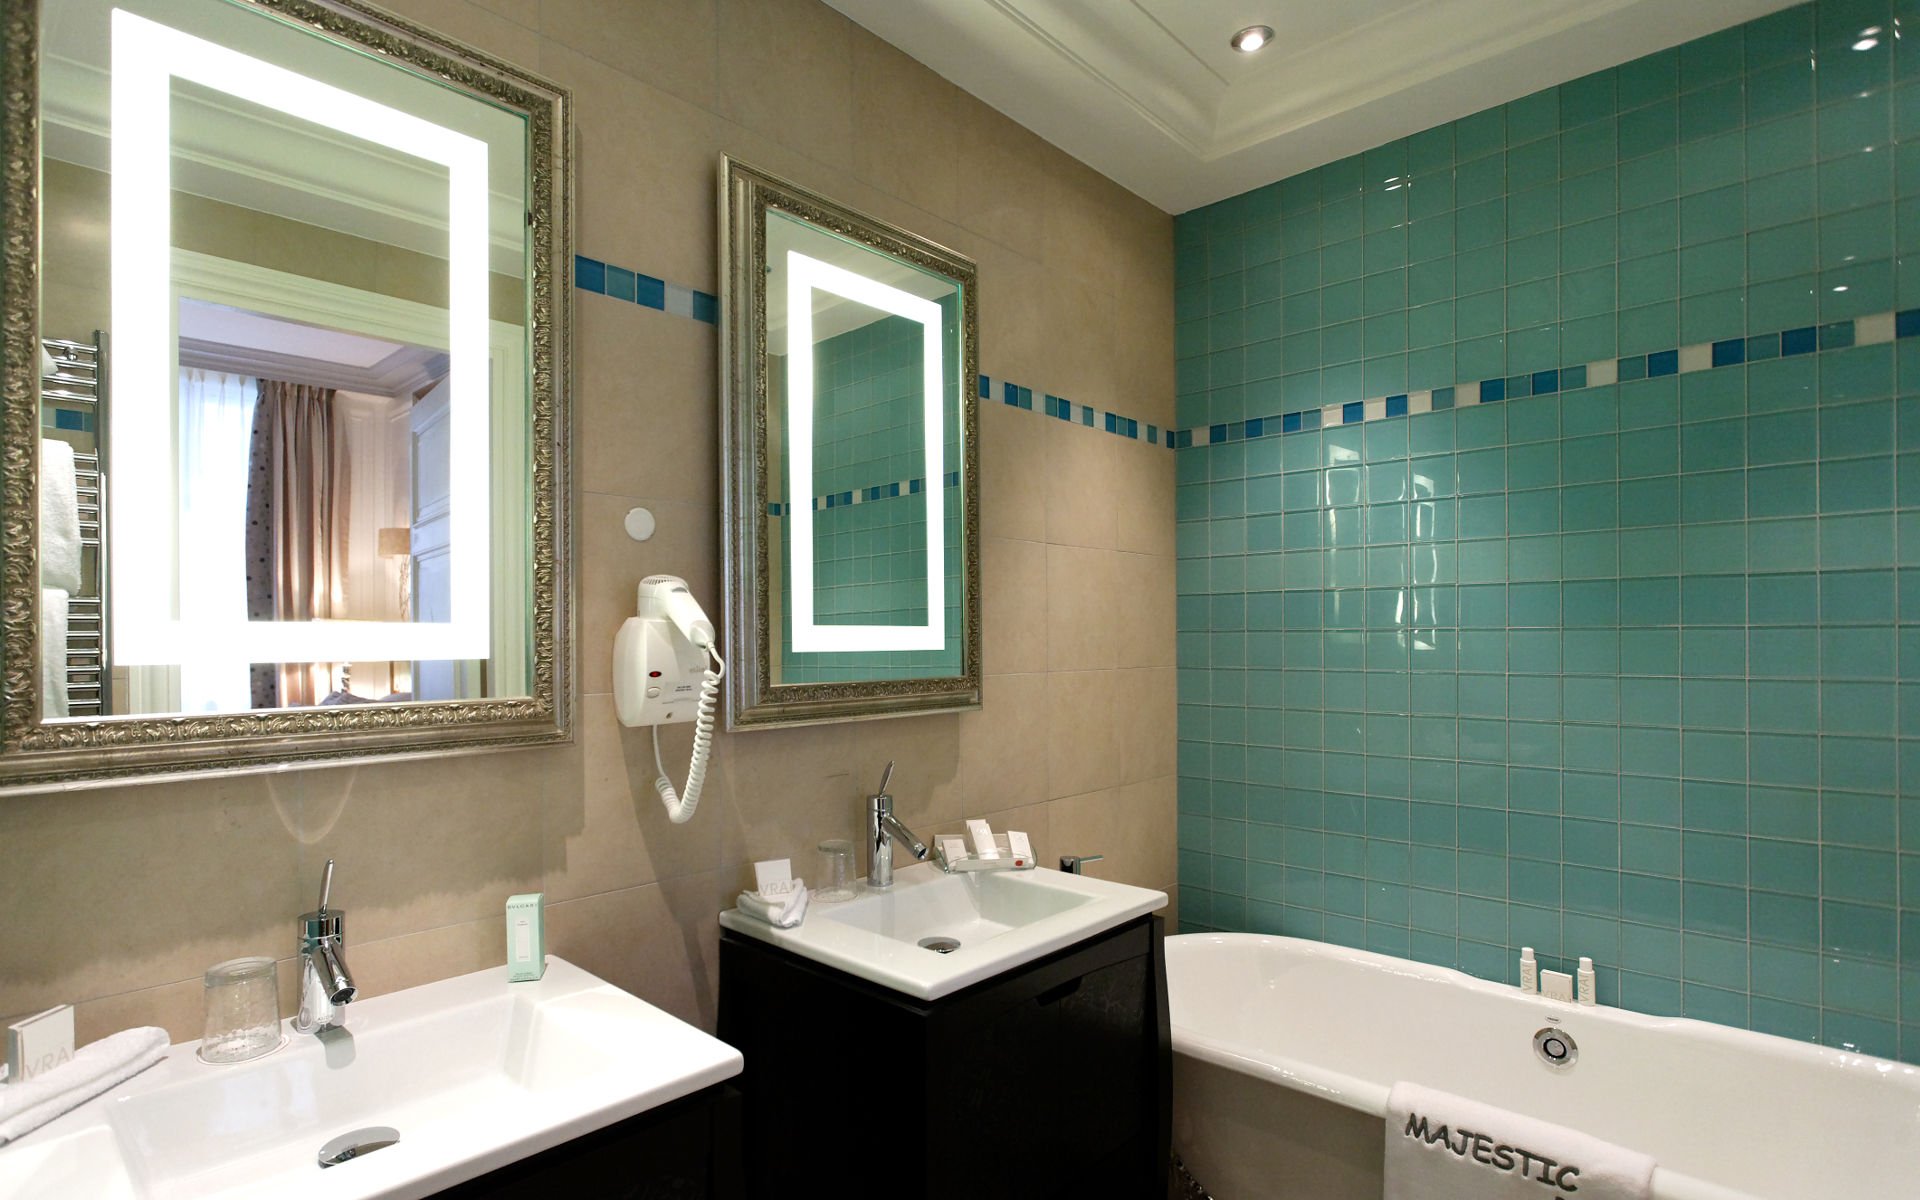 260/Suites/Suite junior/Suite Junior - Bathroom 10 -  Majestic Hotel-Spa.jpg